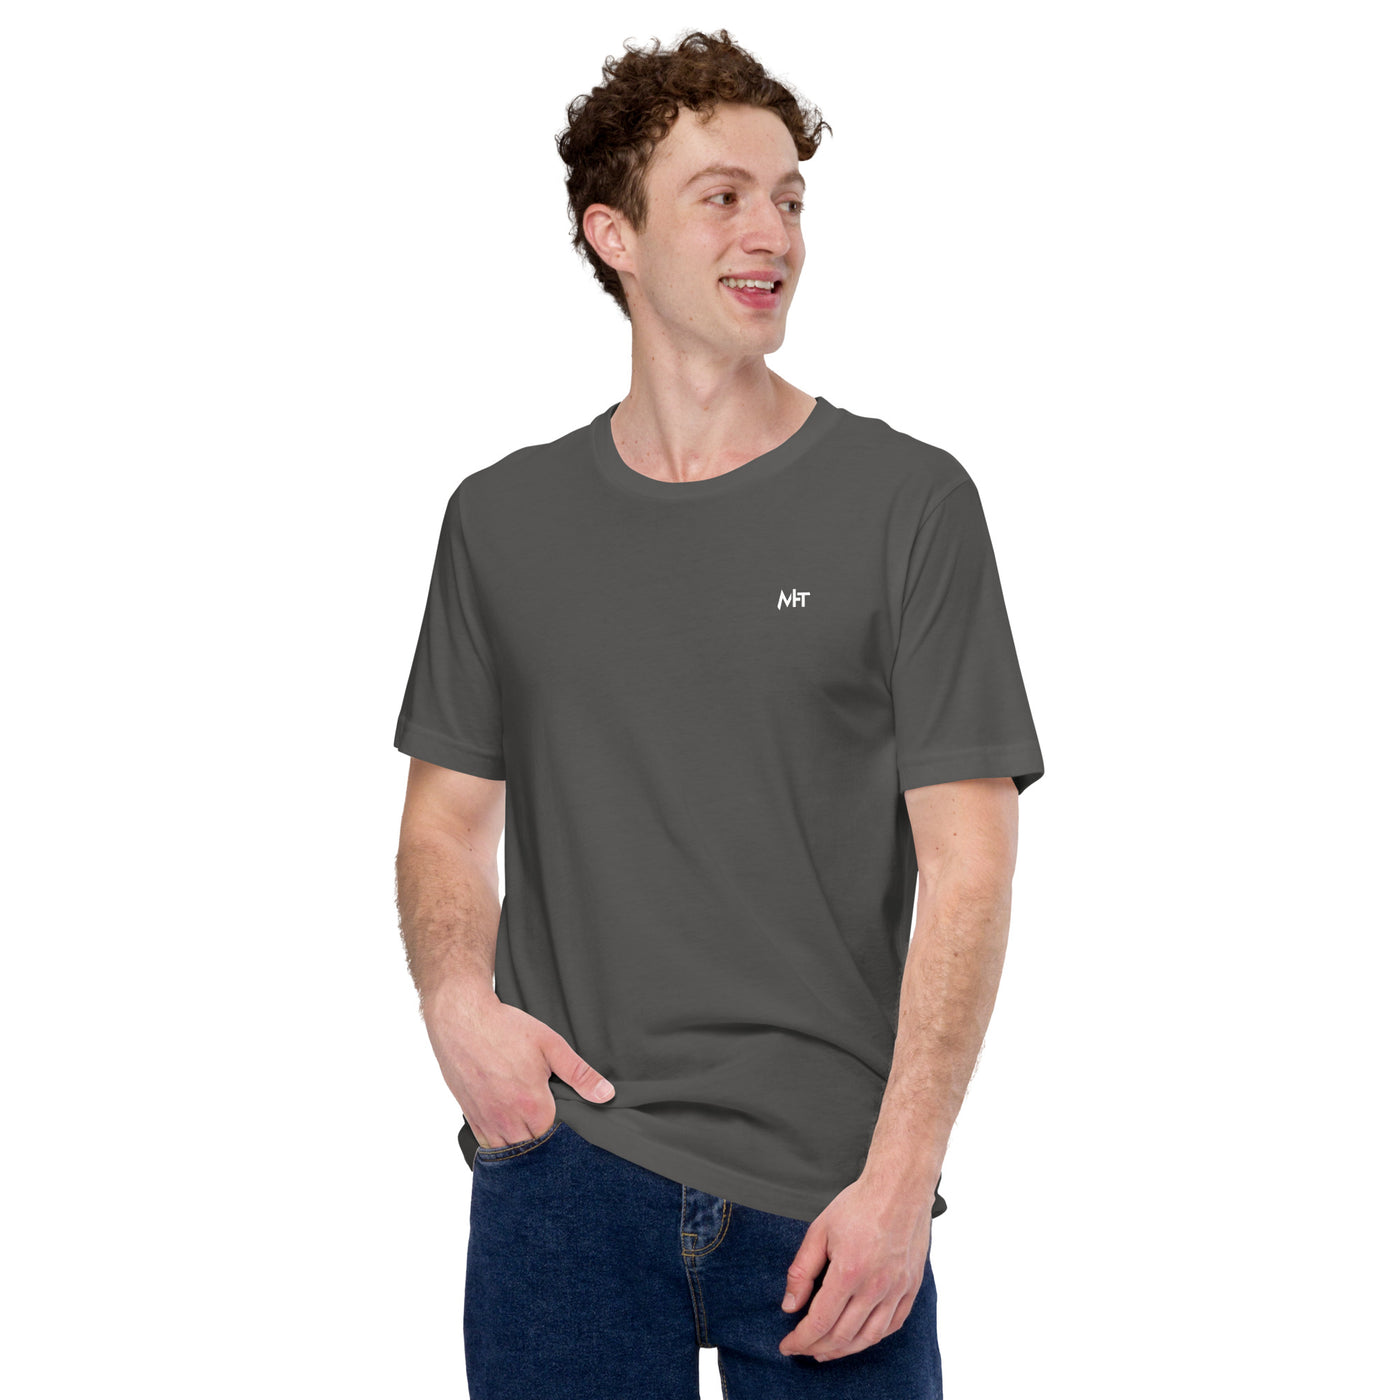 I am not Lazy, I am on Energy Saving Mode - Unisex t-shirt ( Back Print )